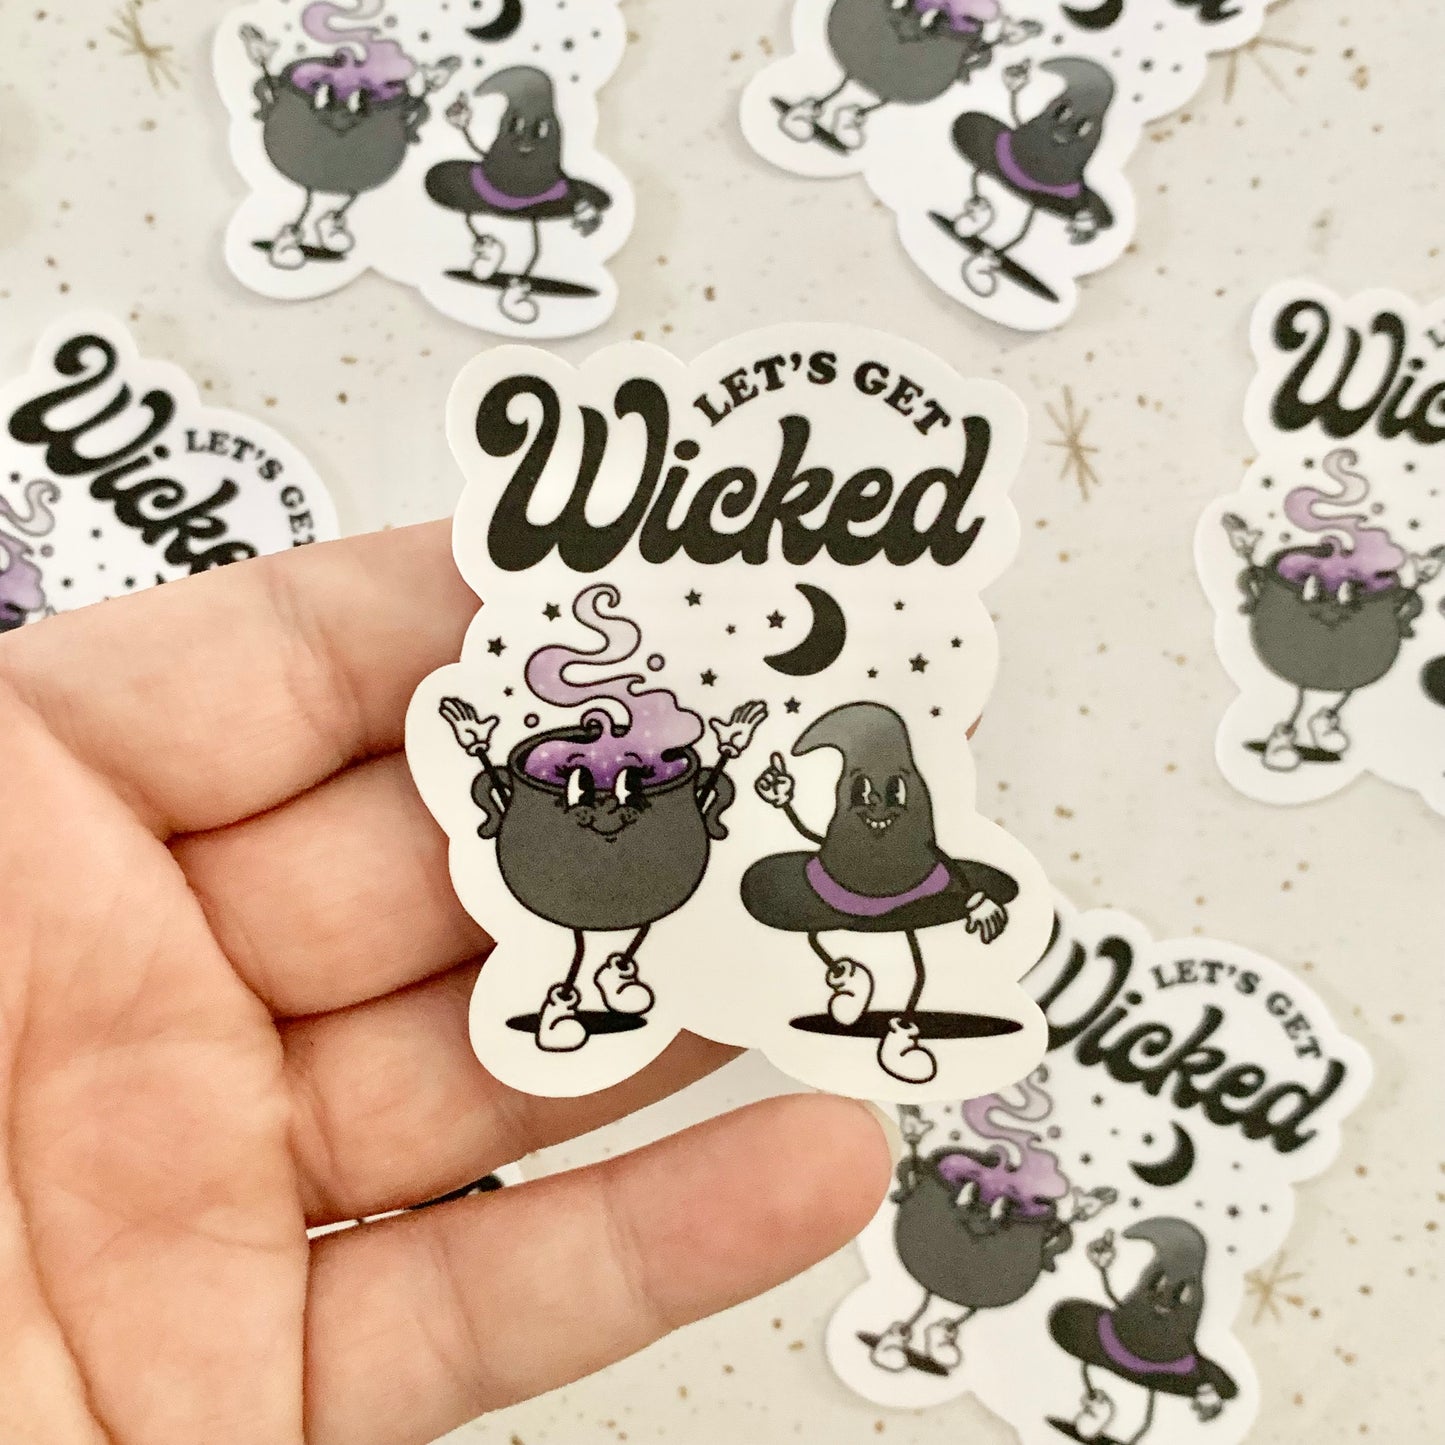 Let's Get Wicked Cute & Spooky Sticker